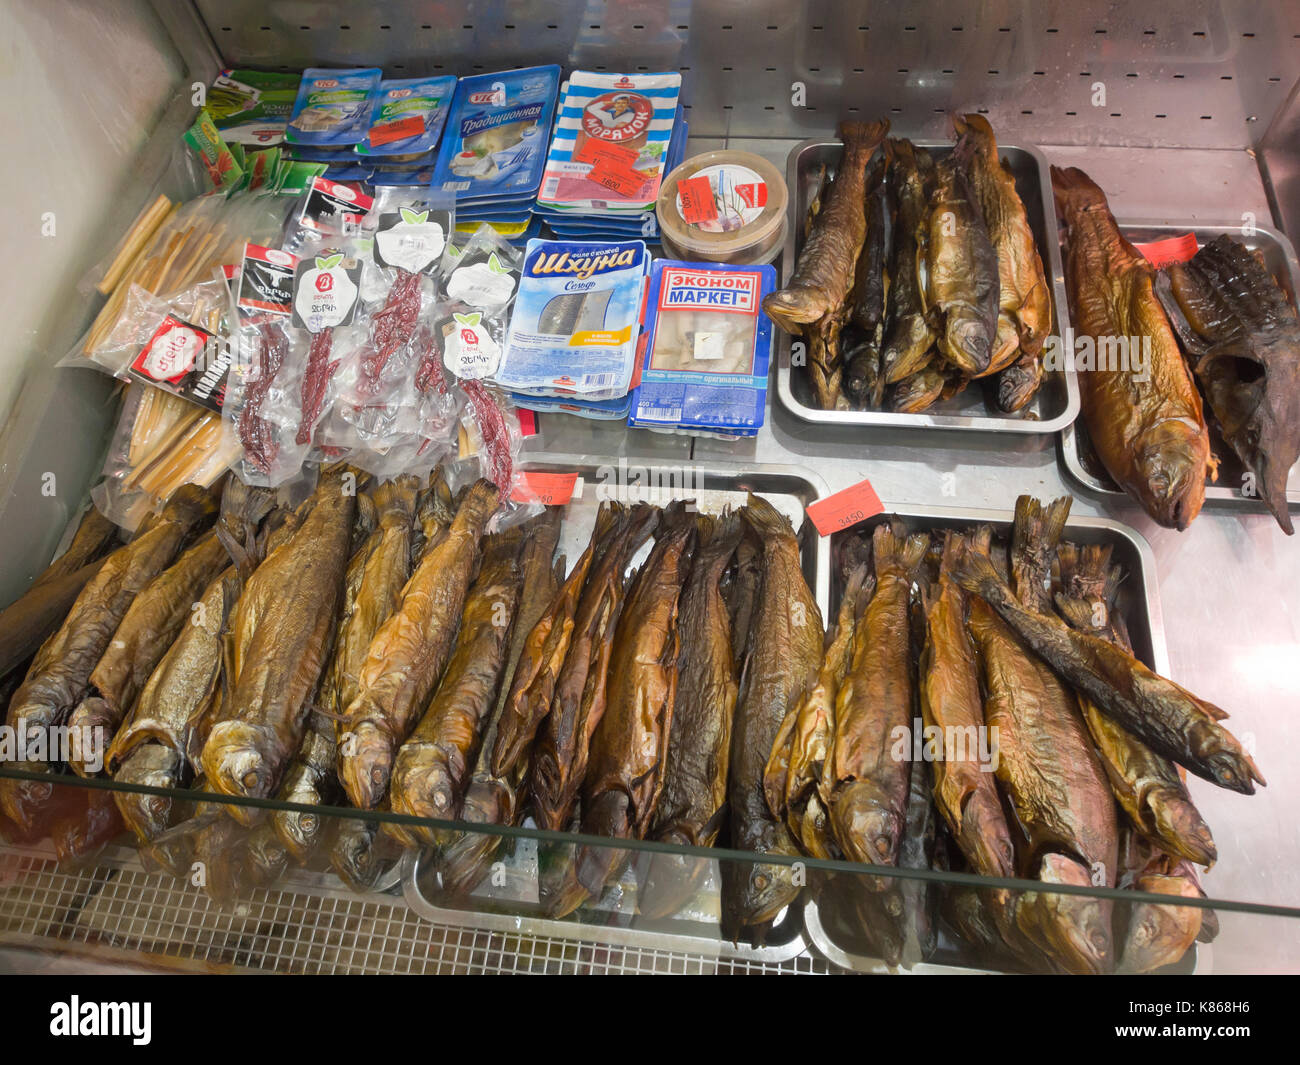 Aparan, petite ville de l'Arménie, bien connu par les voyageurs pour l'Gntunik Boulangerie et supermarché, une sélection de poissons fumés et des produits à vendre Banque D'Images